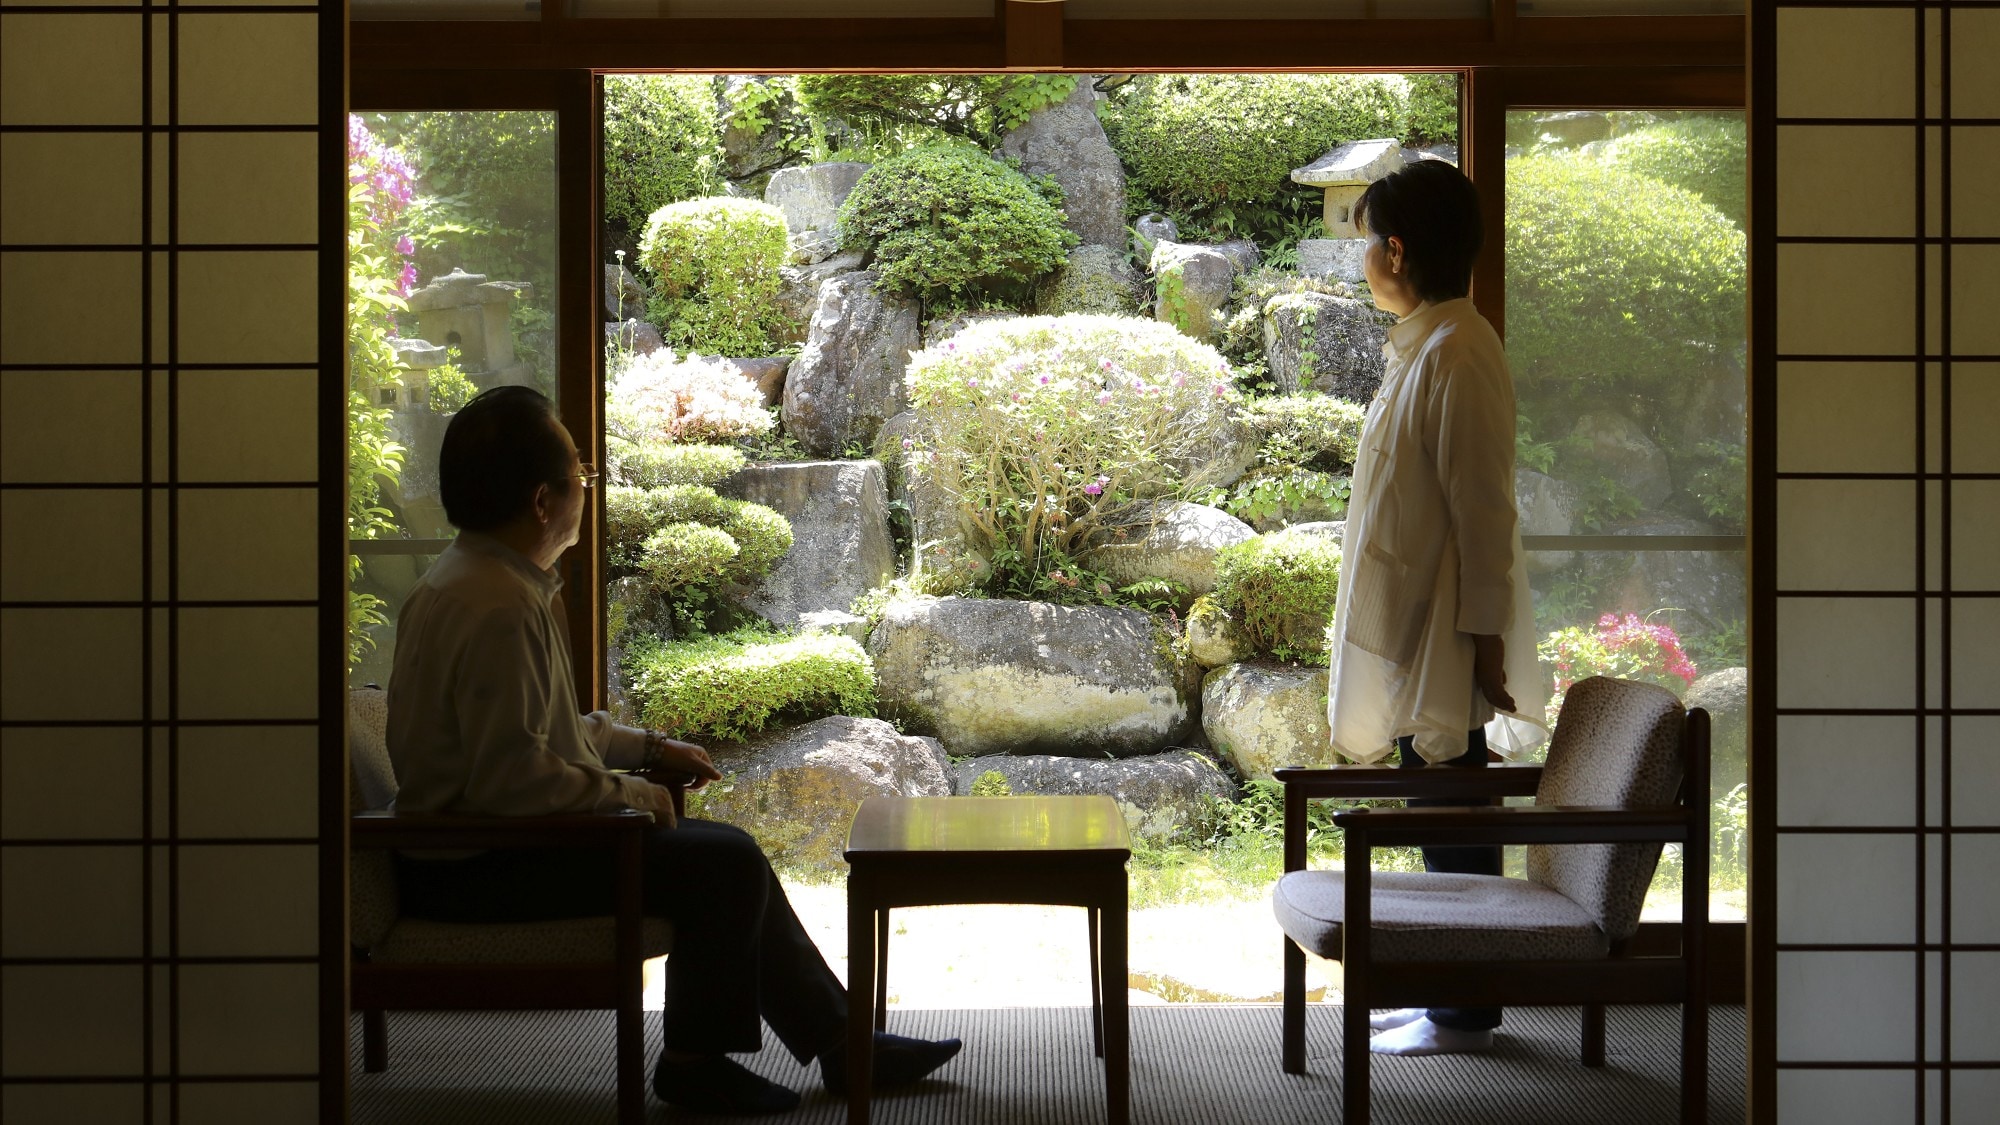 โปรดใช้เวลาพักผ่อนในห้องสไตล์ญี่ปุ่นบริสุทธิ์ที่มีลมธรรมชาติพัดผ่าน